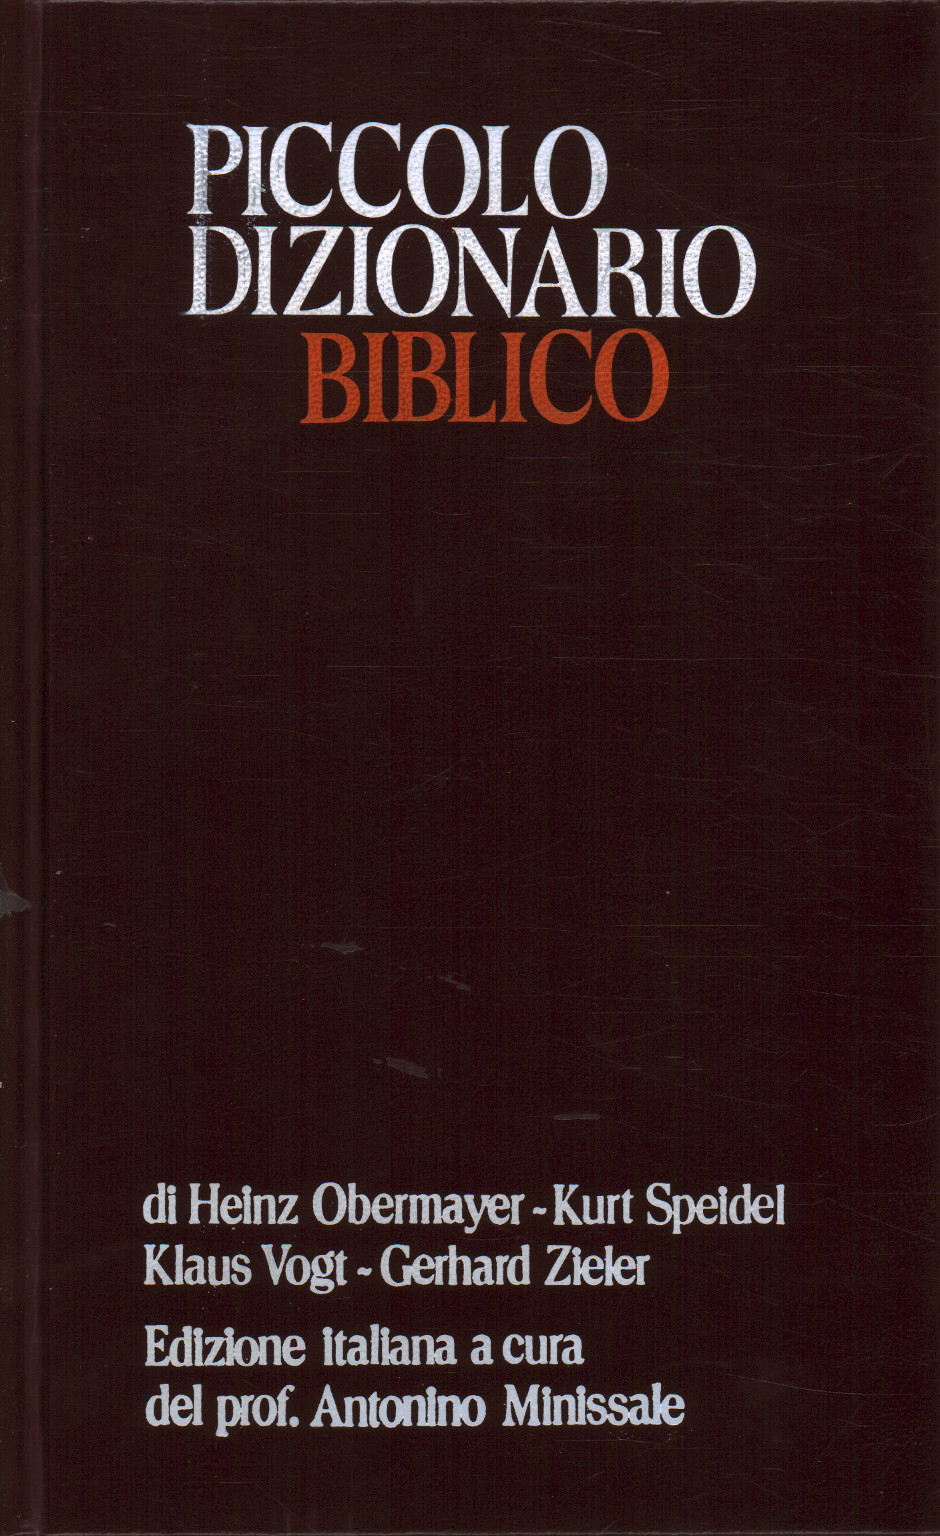 Piccolo dizionario biblico, AA.VV